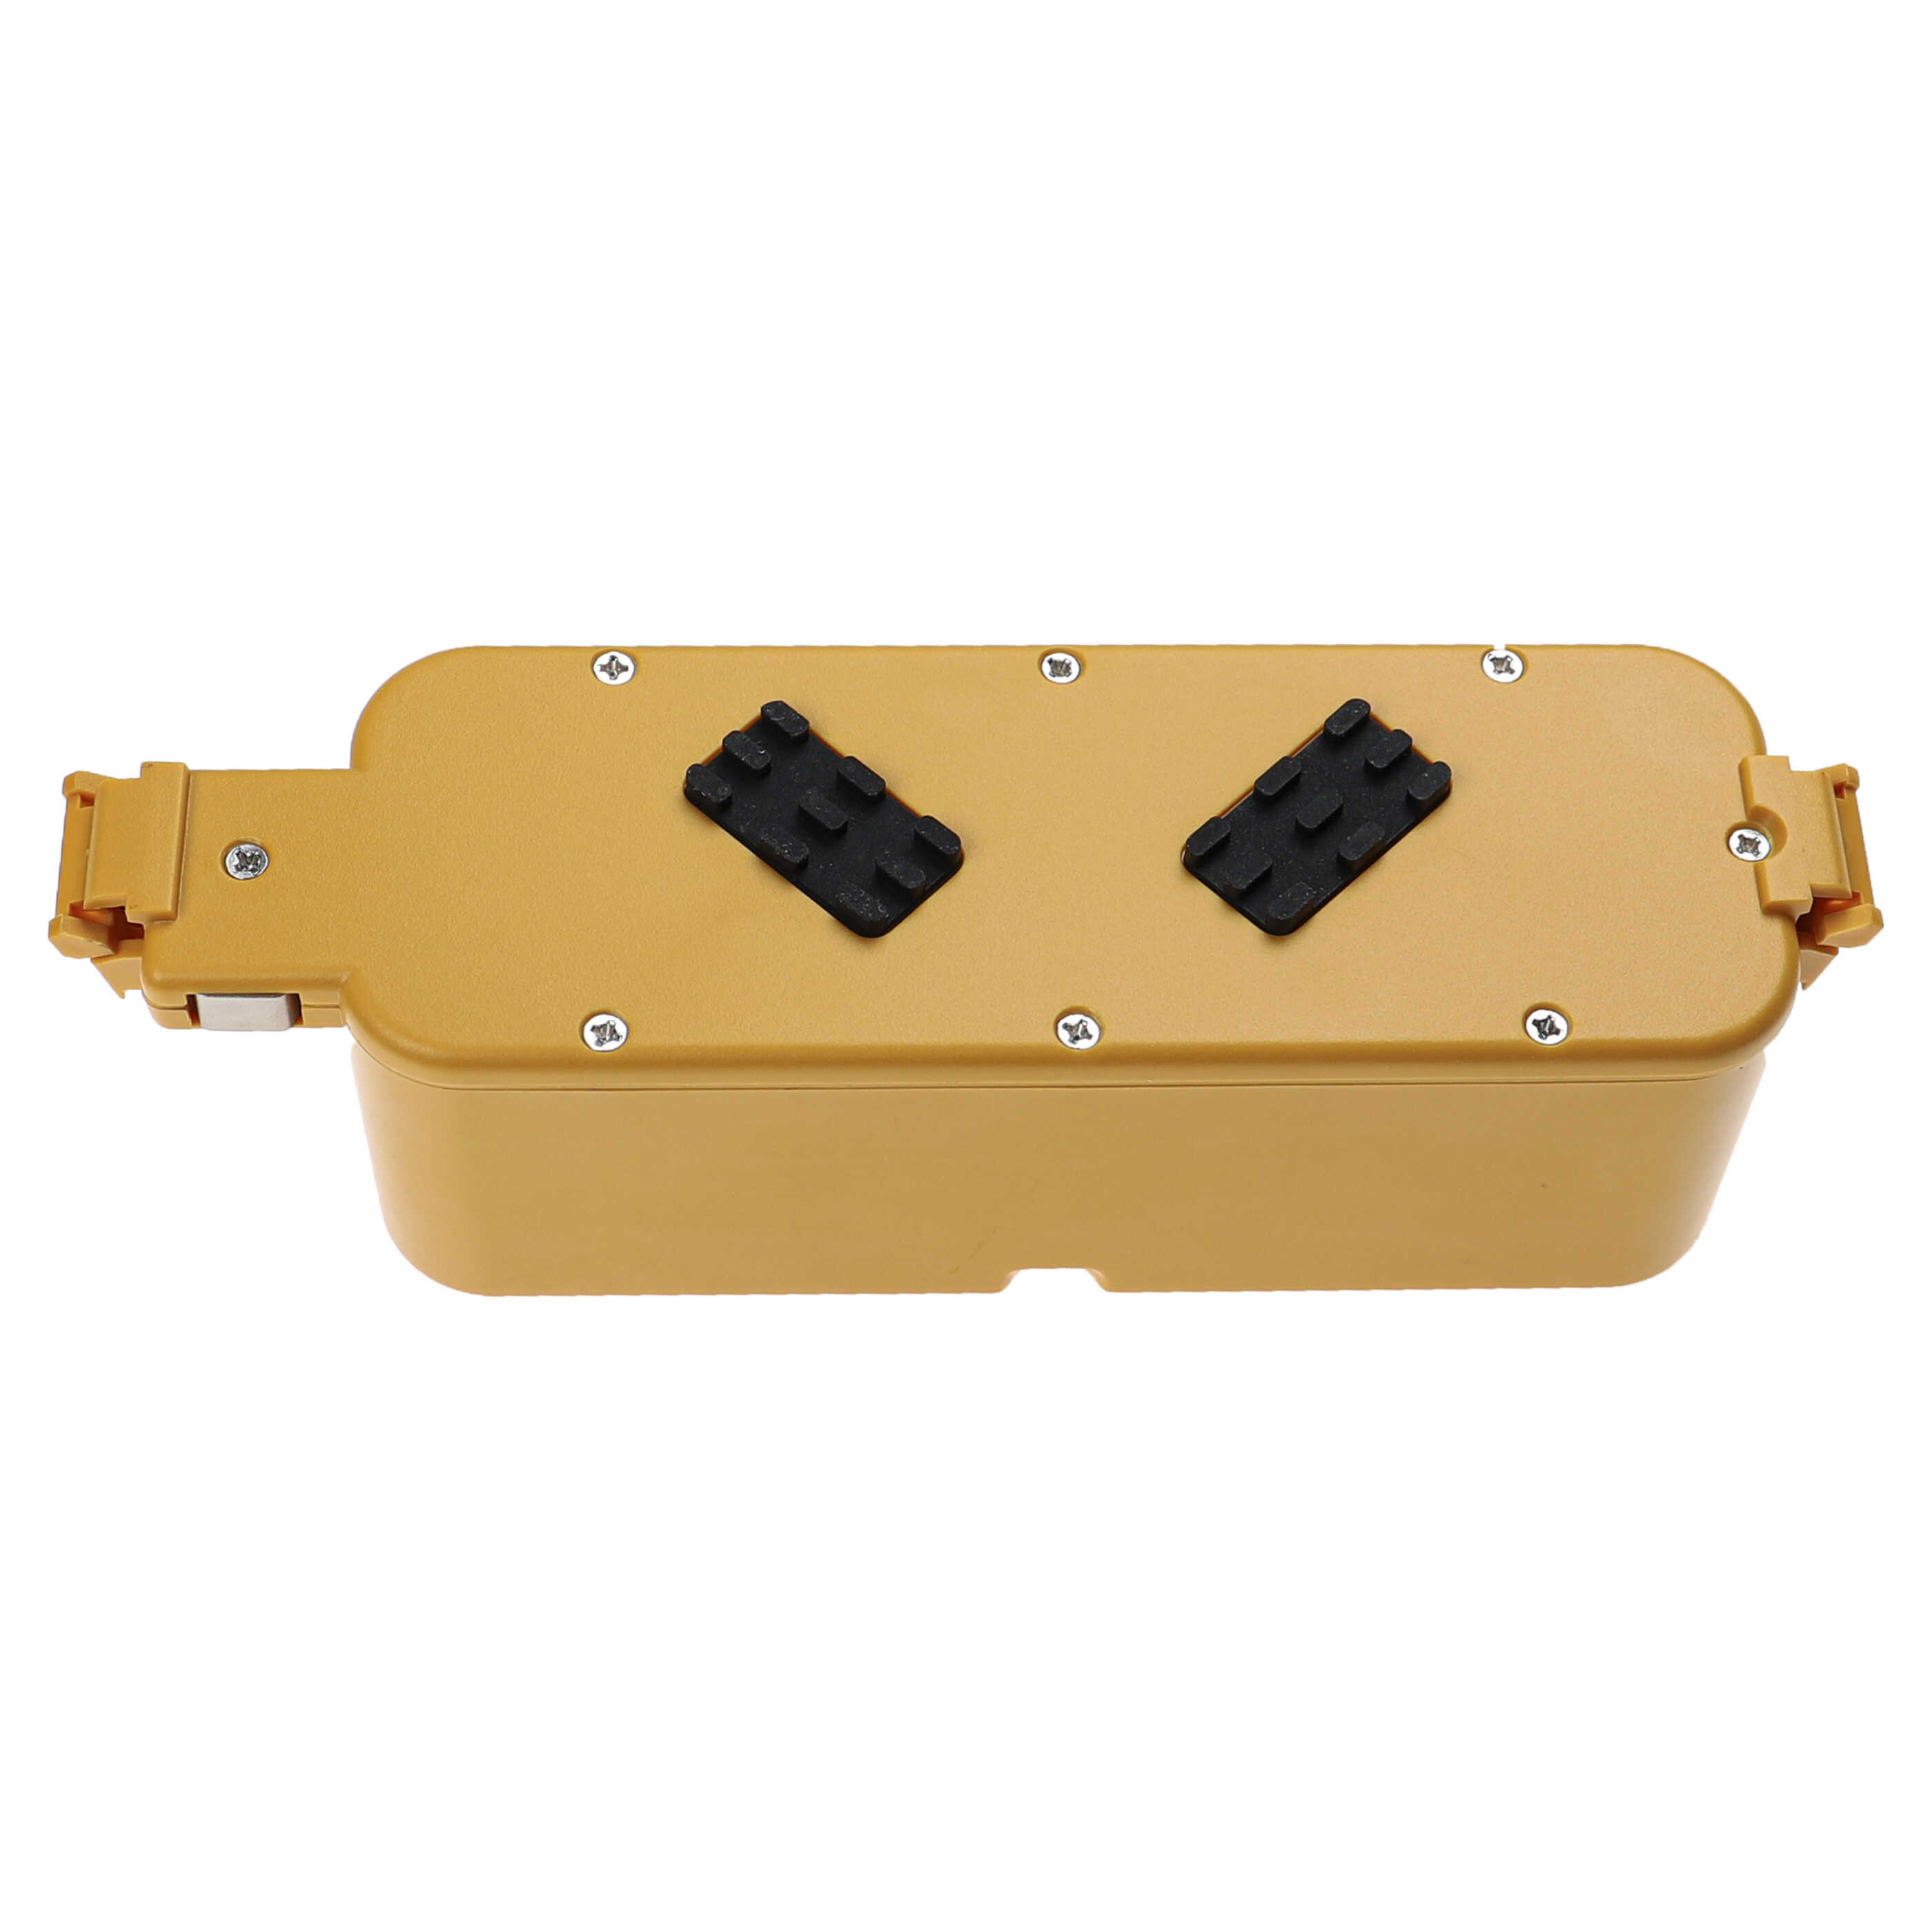 Batteria sostituisce APS 4905, 11700, 17373 per robot aspiratore iRobot - 1500mAh 14,14V NiMH giallo